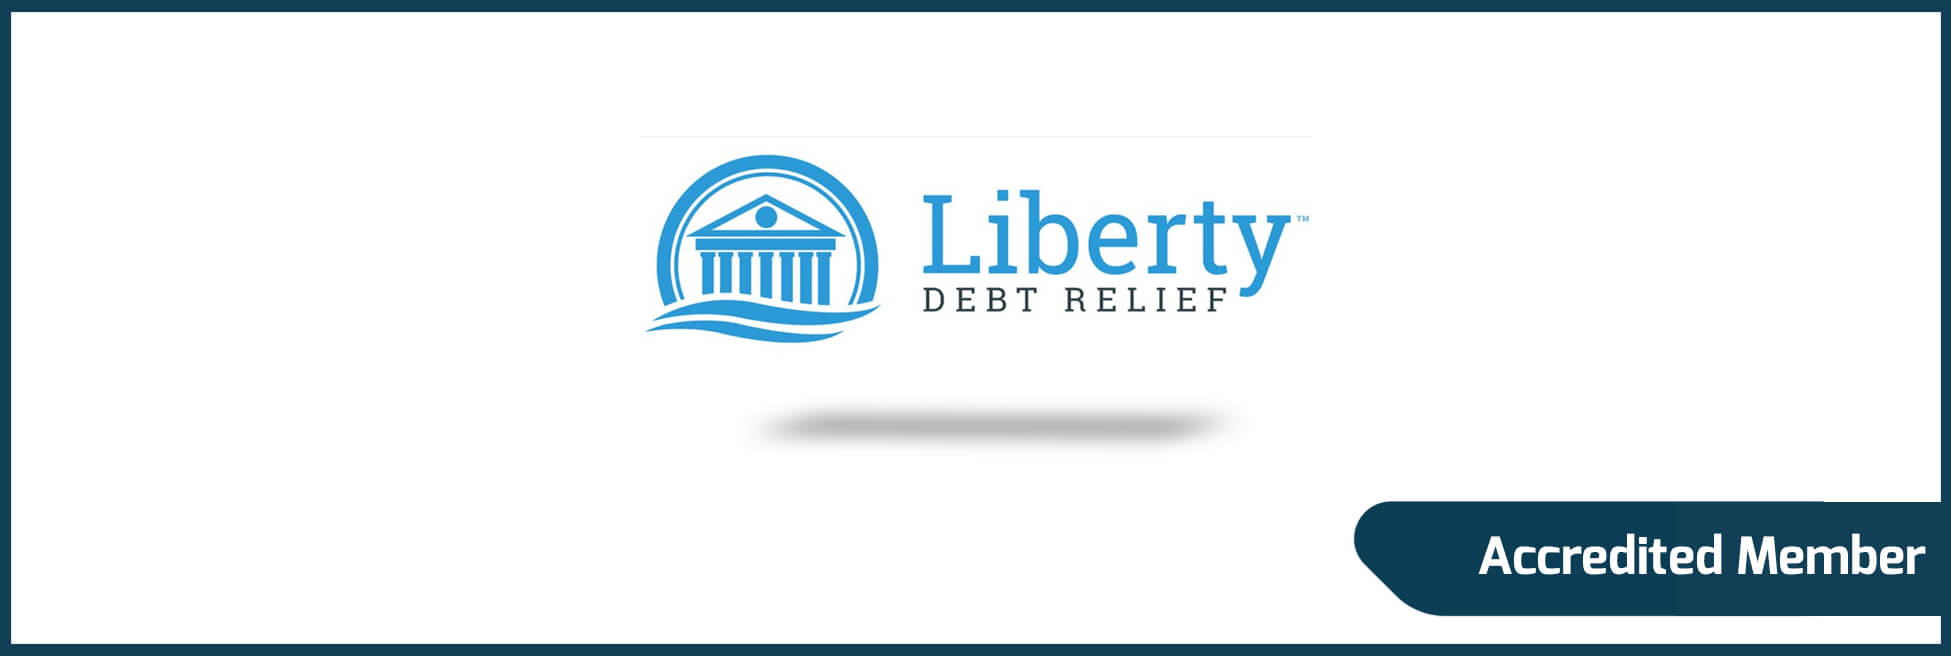 Liberty DebtRelief